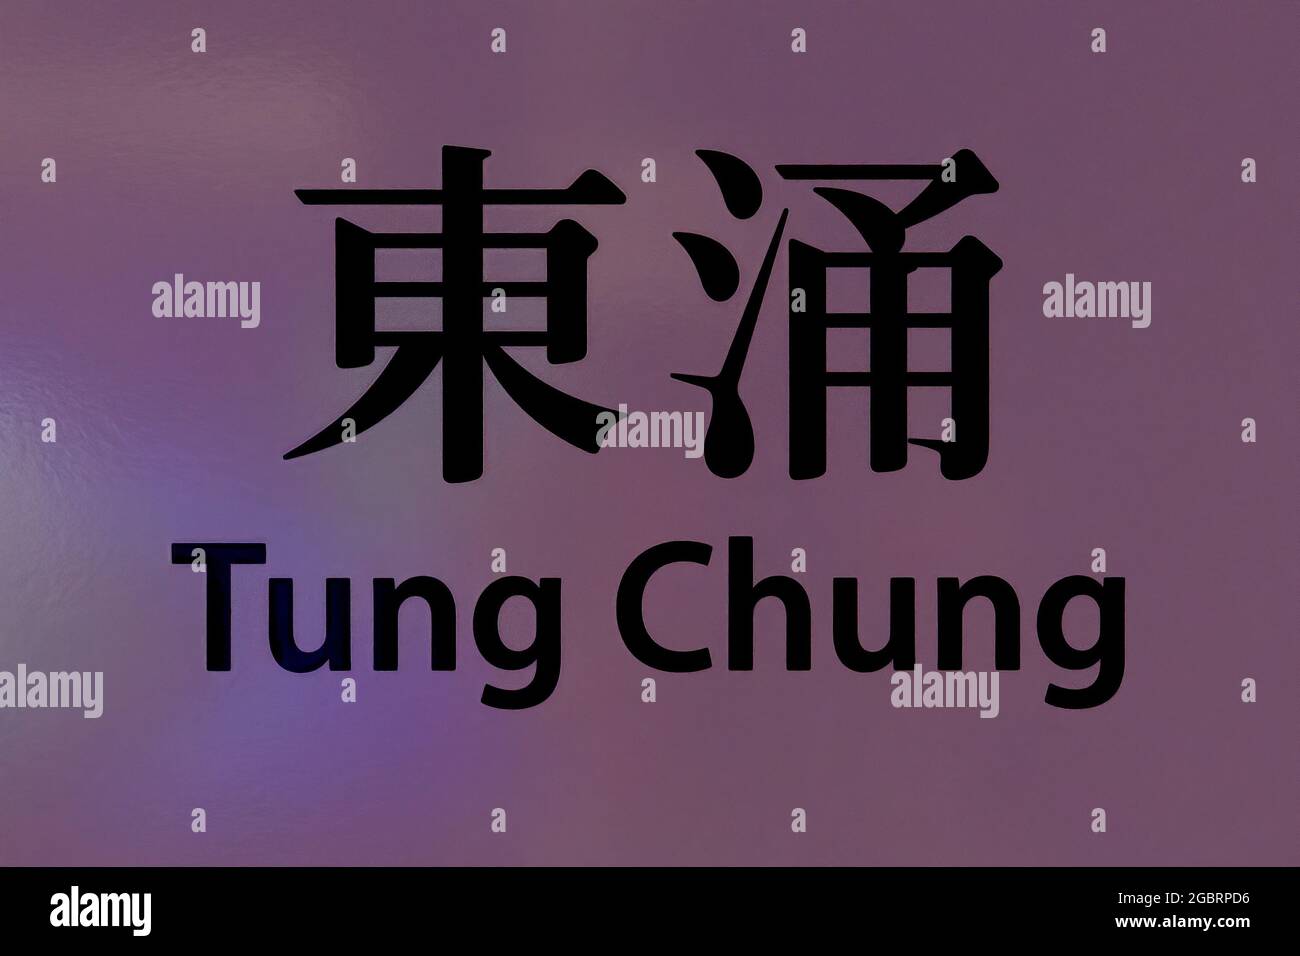 Le panneau bilingue de la gare Tung Chung MTR (Mass Transit Railway) sur la ligne Tung Chung, Kowloon, Hong Kong Banque D'Images